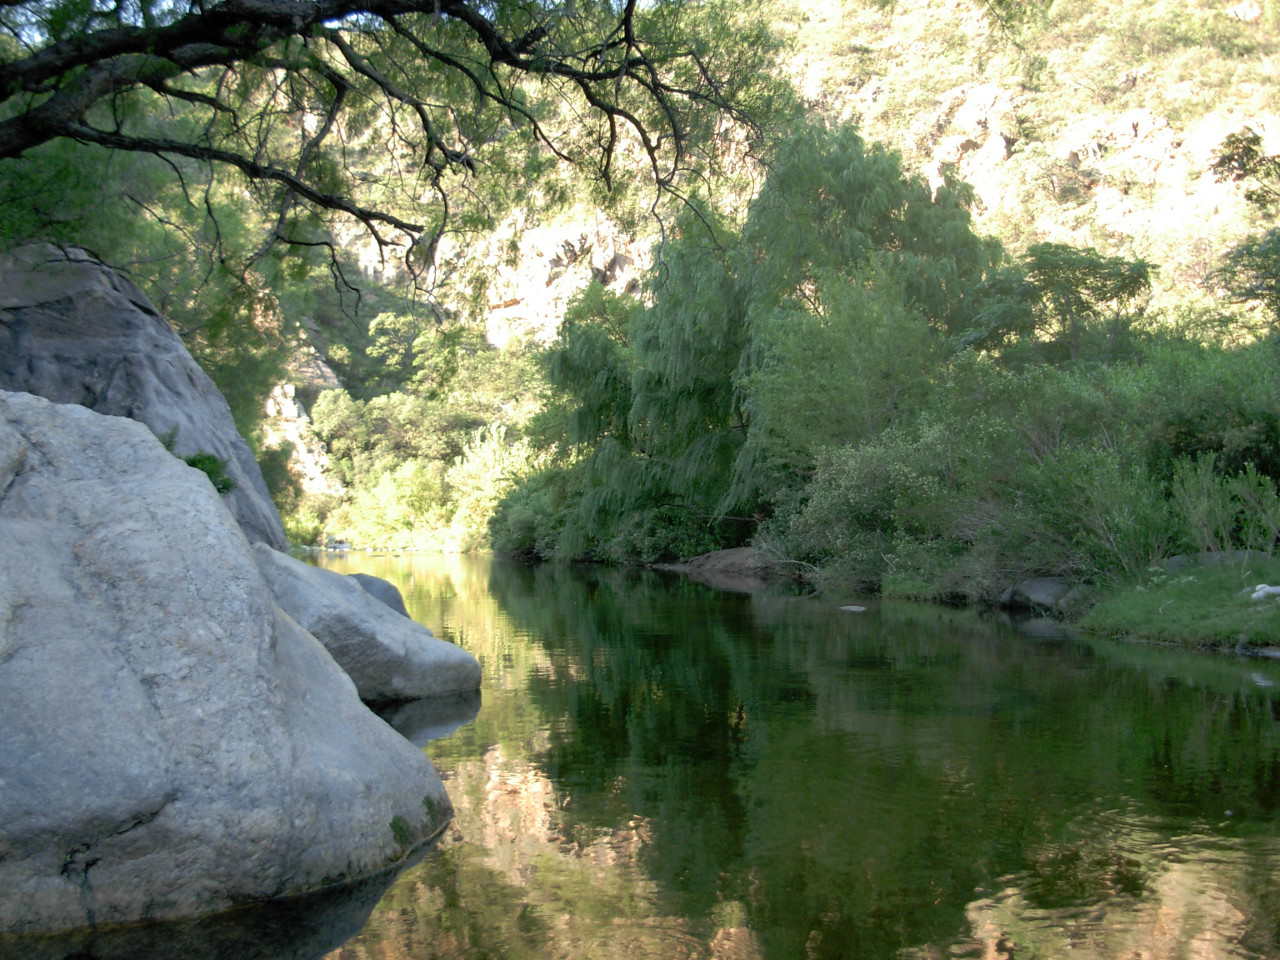 La foto muestra un primer plano del río San Marcos corriendo entre grandes piedras y árboles cerca de la hostería.